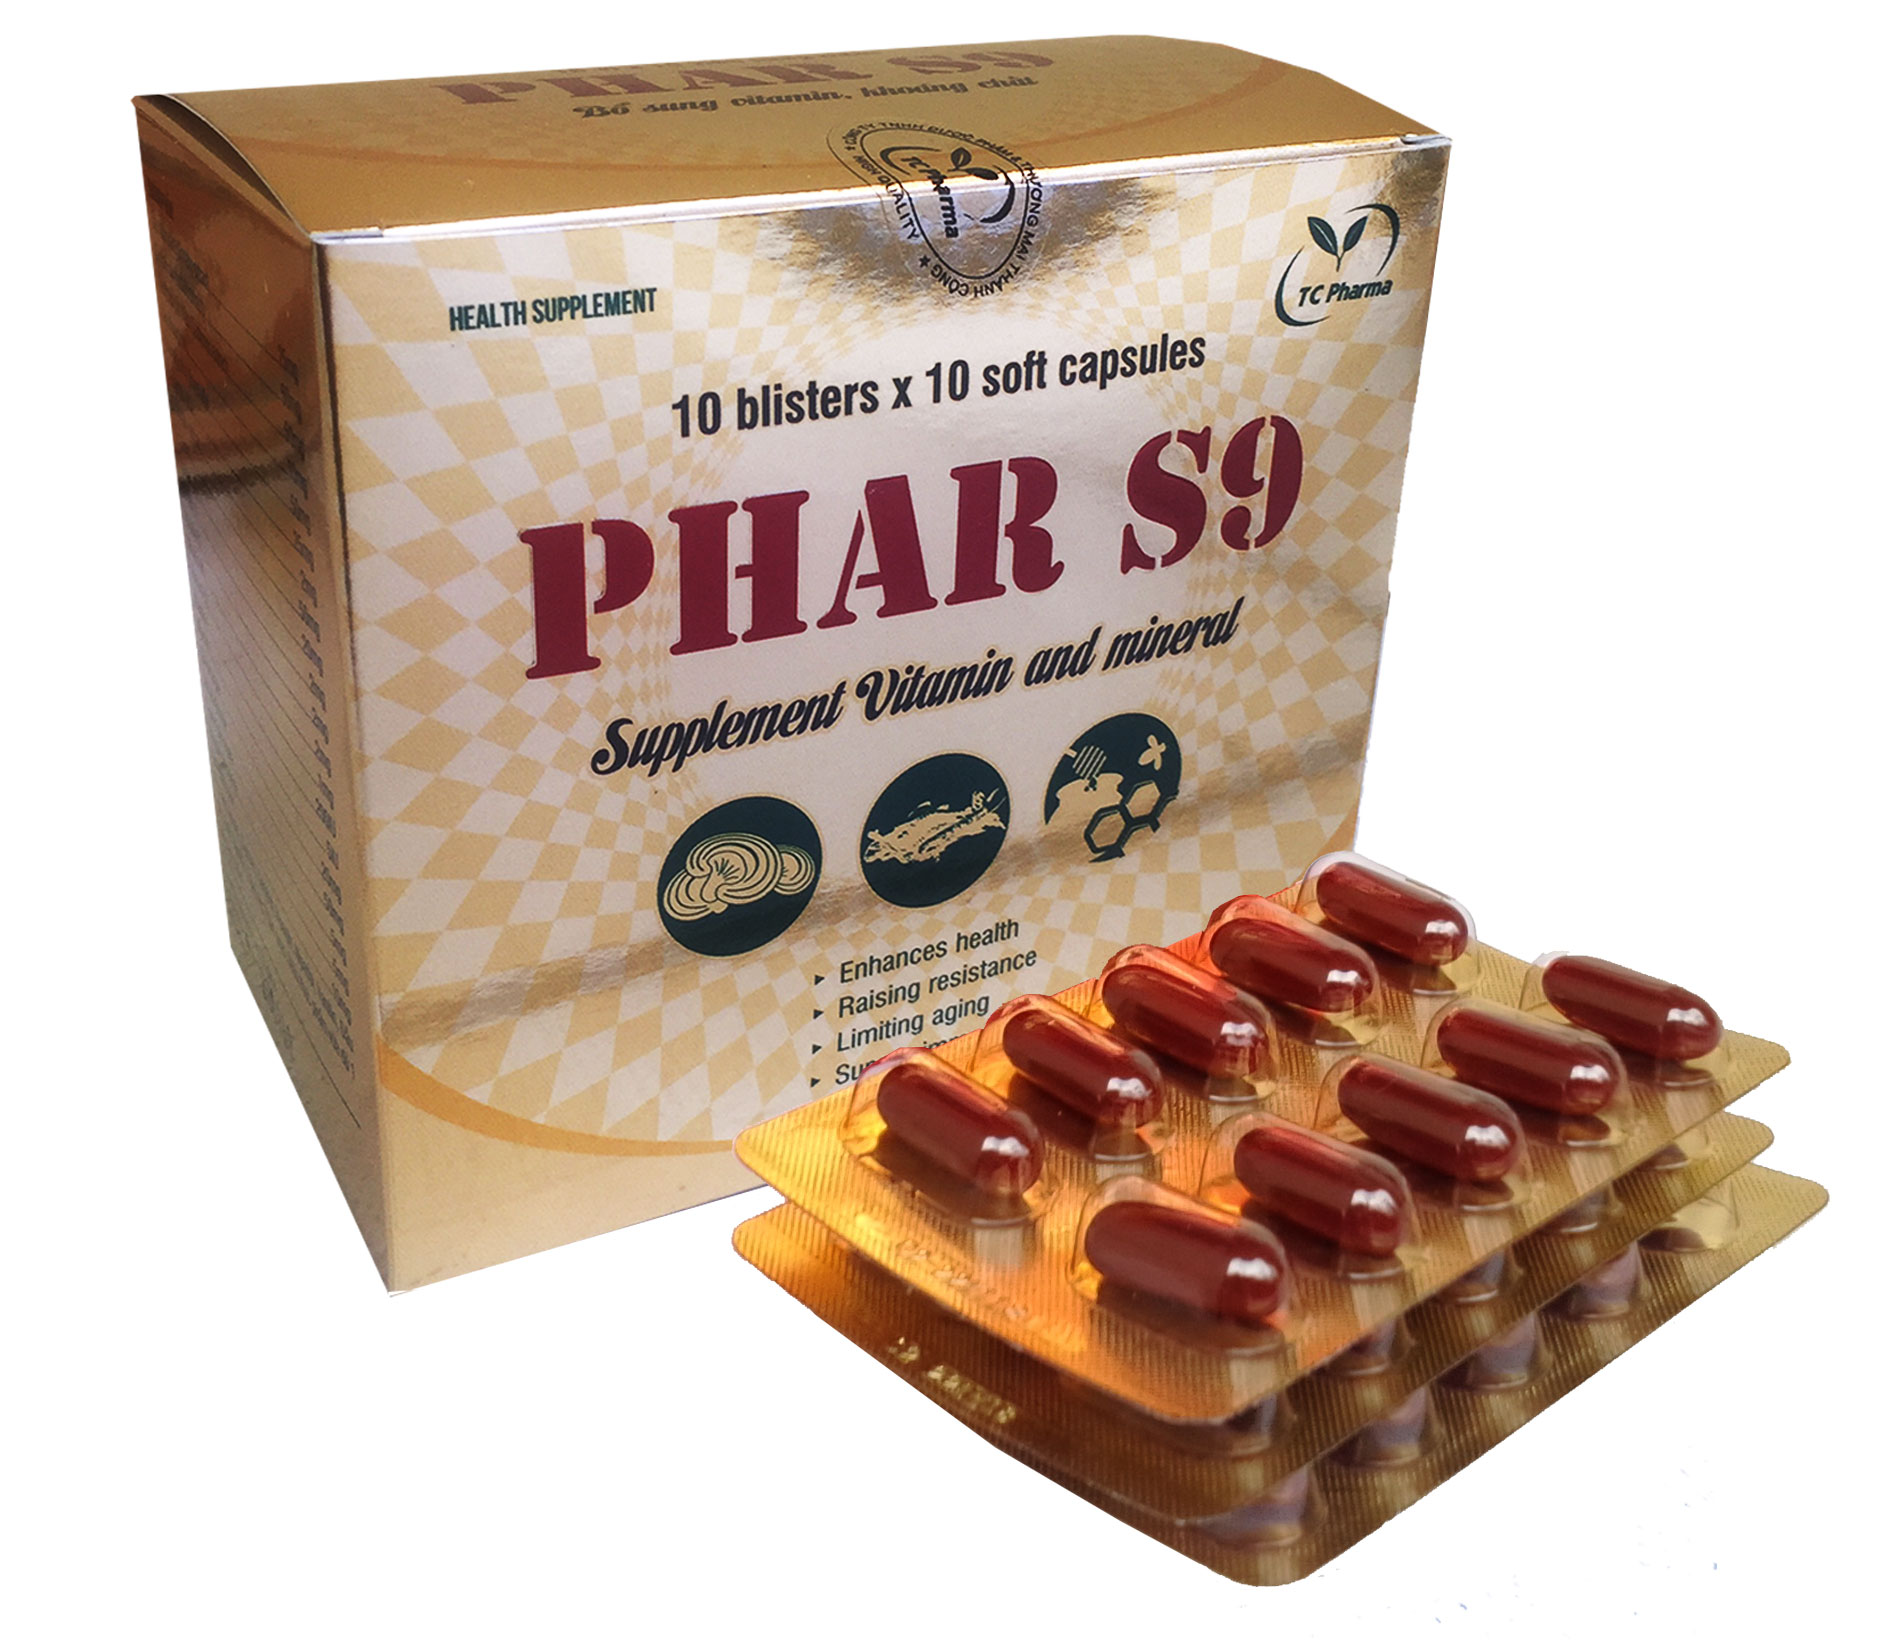 thực phẩm chức năng vitamin tổng hợp phar s9 1